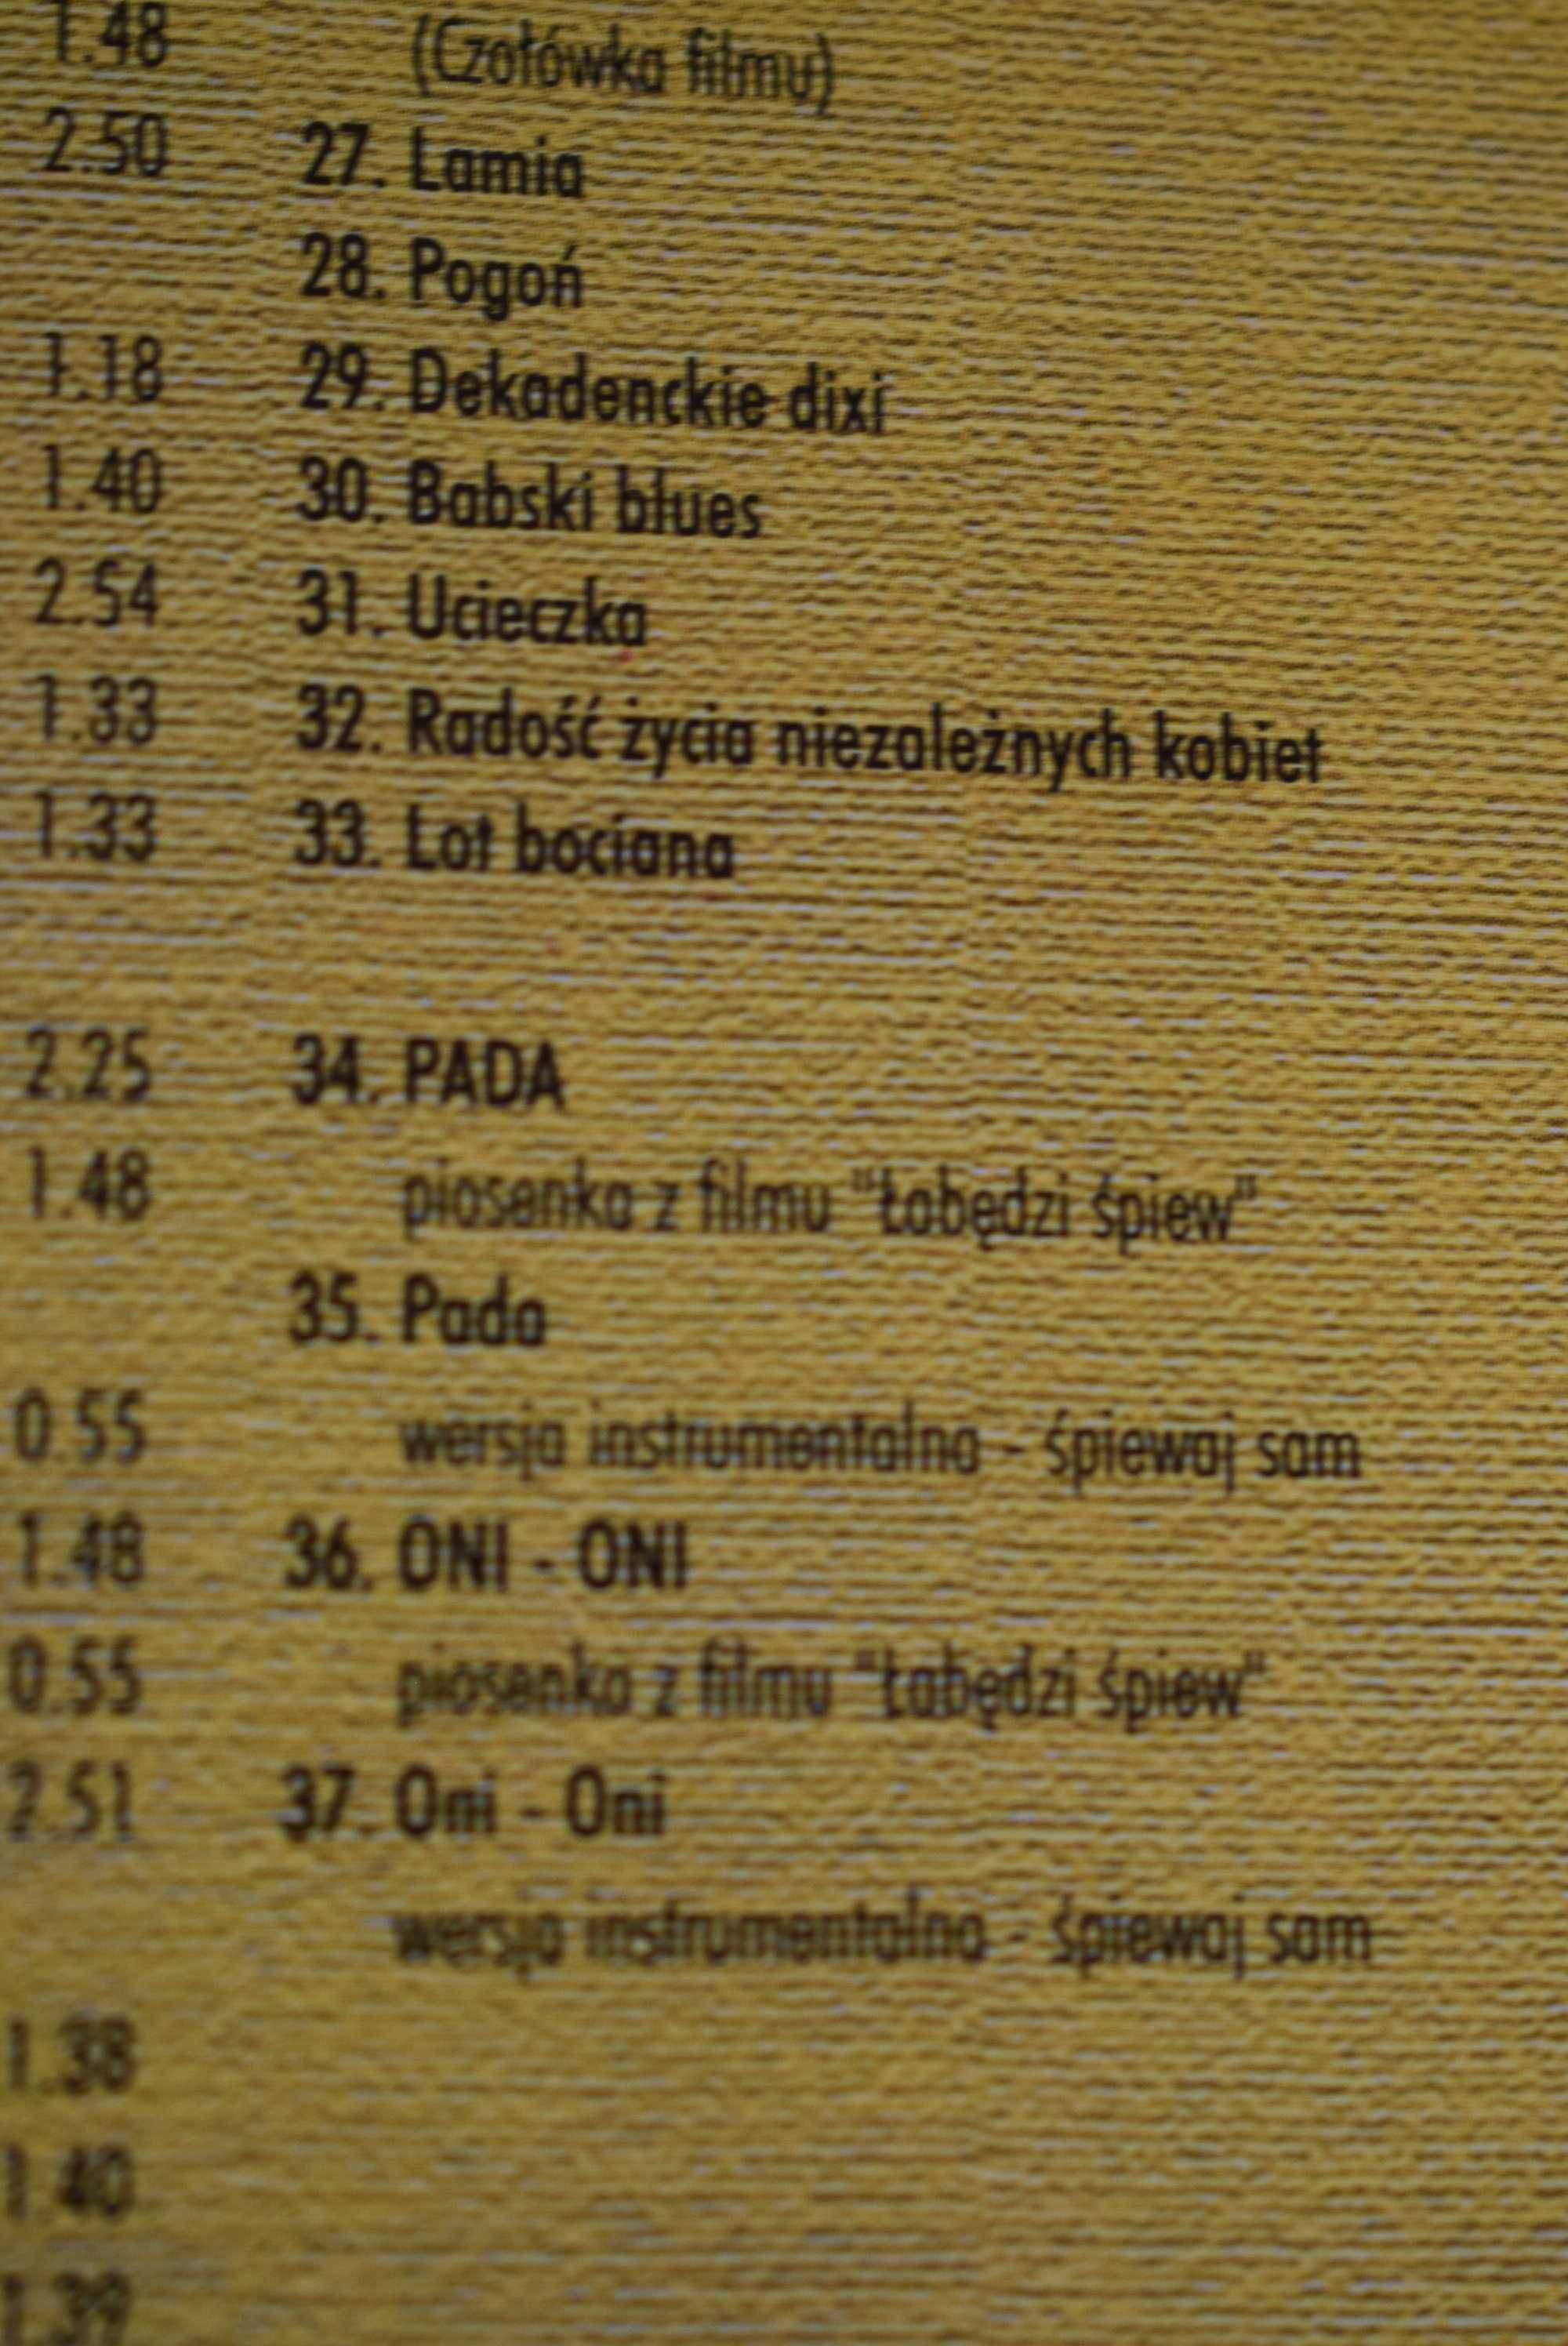 Polska muzyka filmowa - 42 utwory na płytach CD.